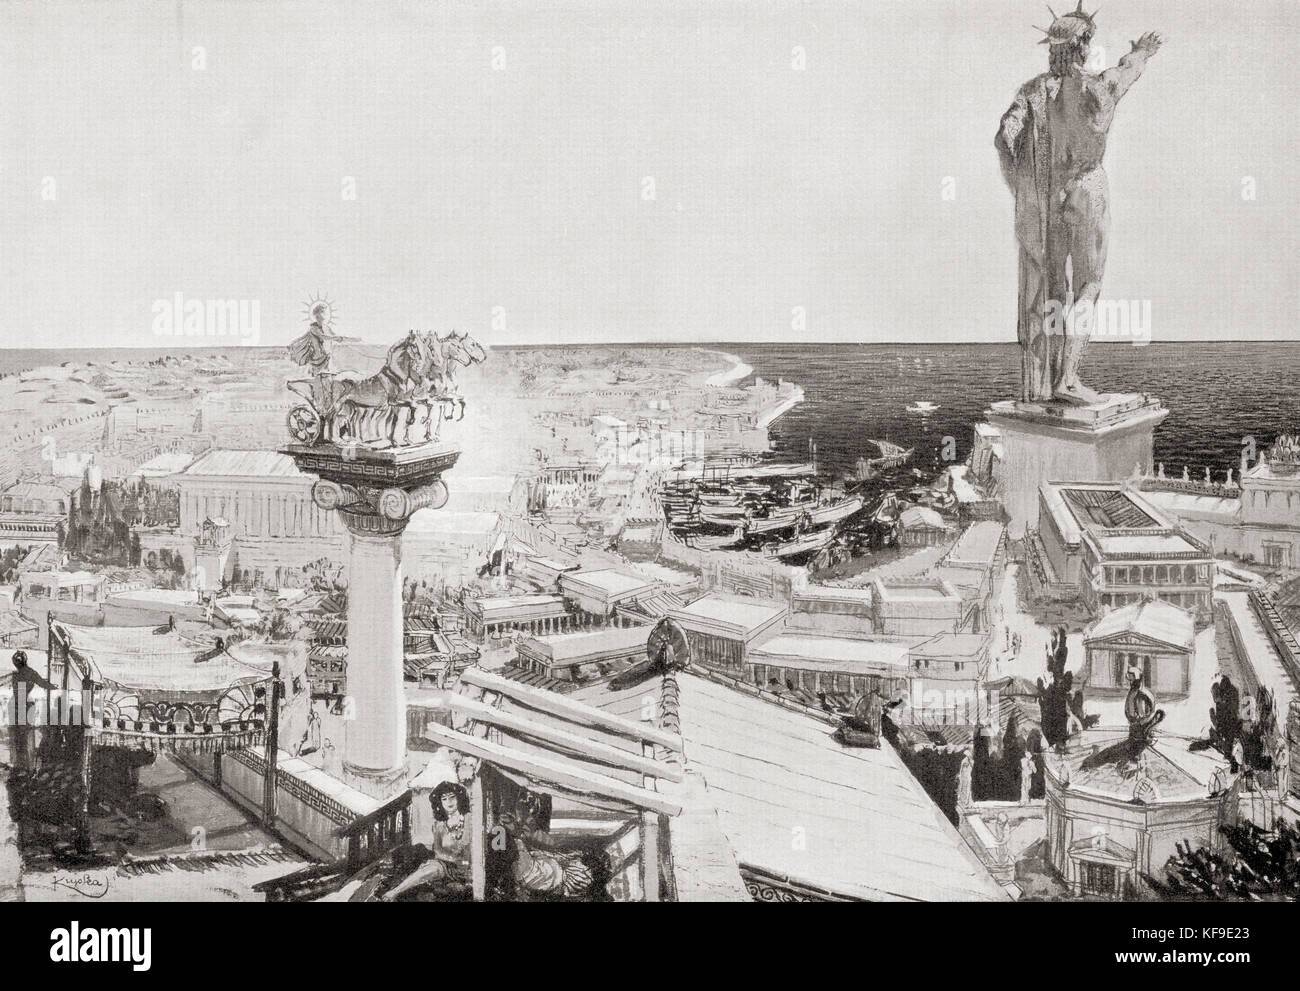 Le Colosse de Rhodes. Une statue de la grec titan-dieu du soleil Hélios, érigé dans la ville de Rhodes, en Grèce par Charès de Lindos en 280 BC. L'une des sept merveilles du monde antique. L'histoire de Hutchinson de l'ONU, publié en 1915. Banque D'Images